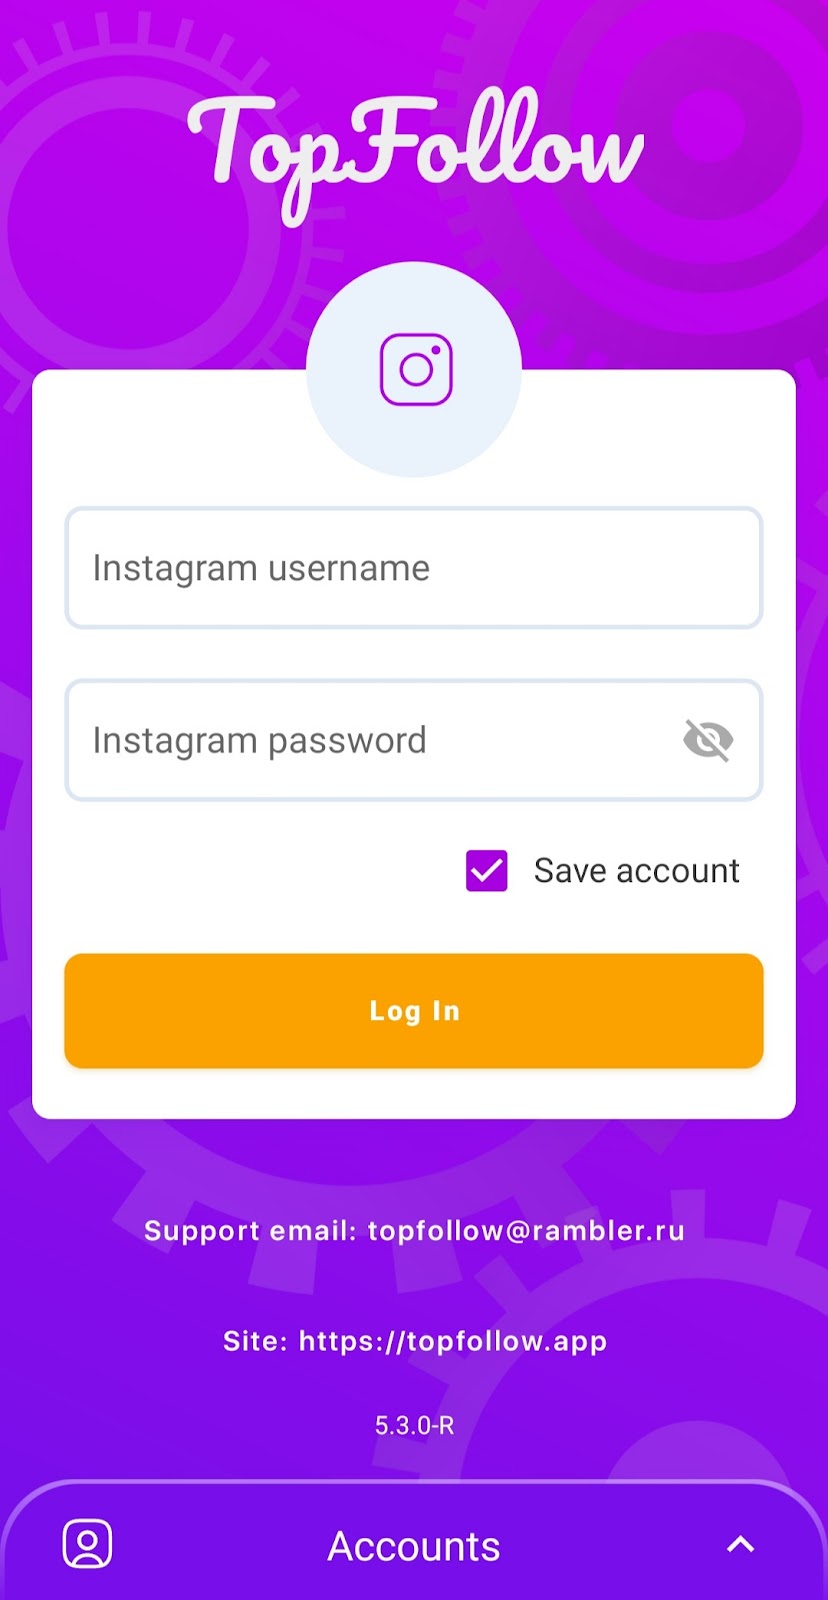 Instagram Username And Password in top follow app